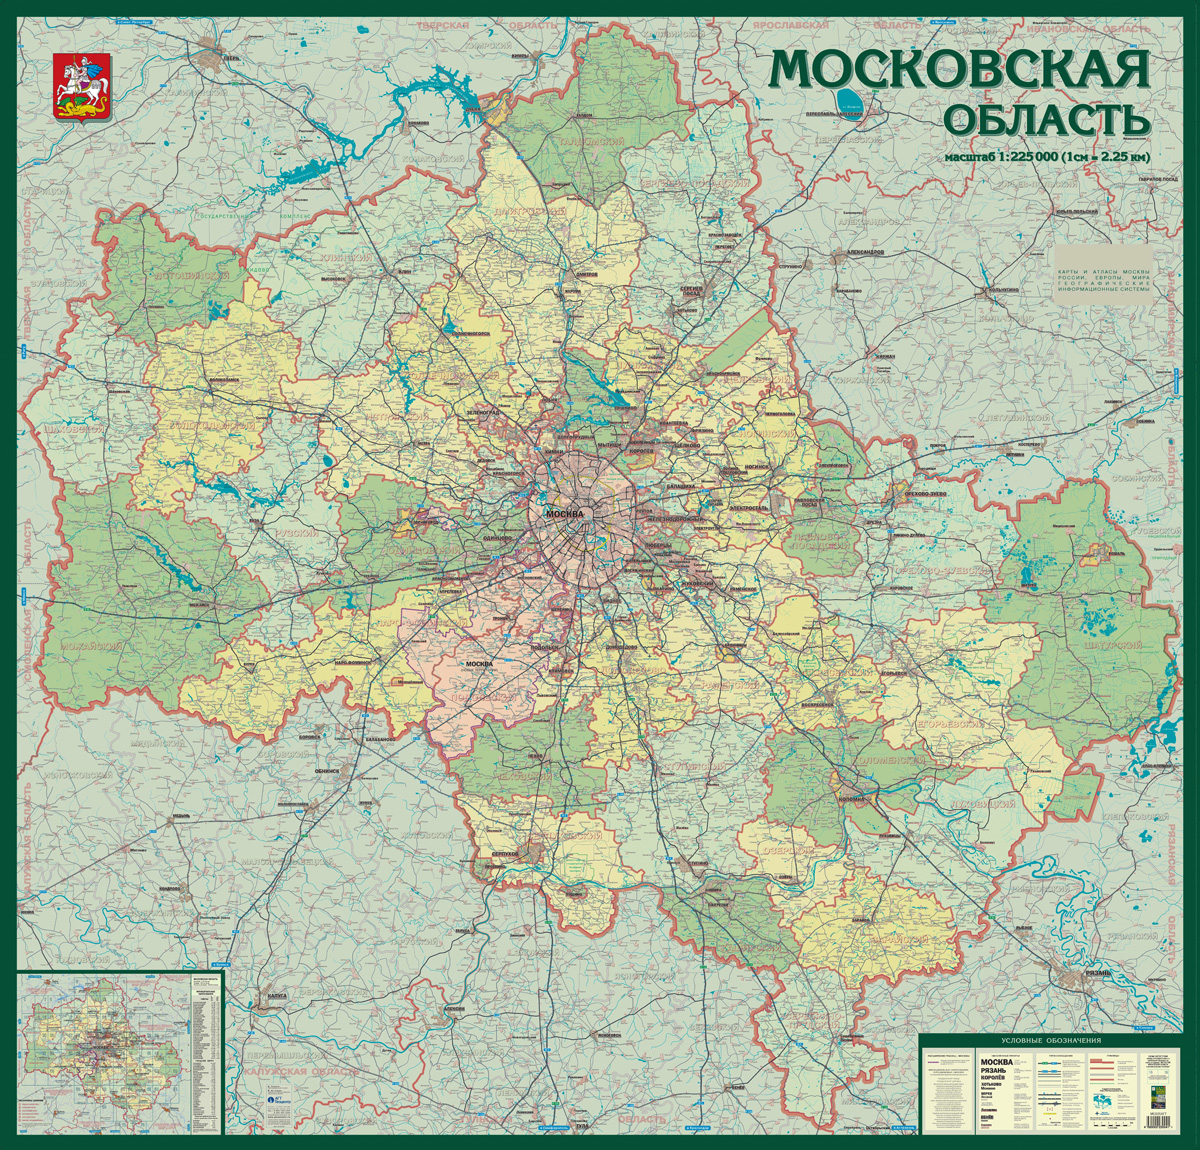 Как узнать до какого числа действует социальная карта московской области